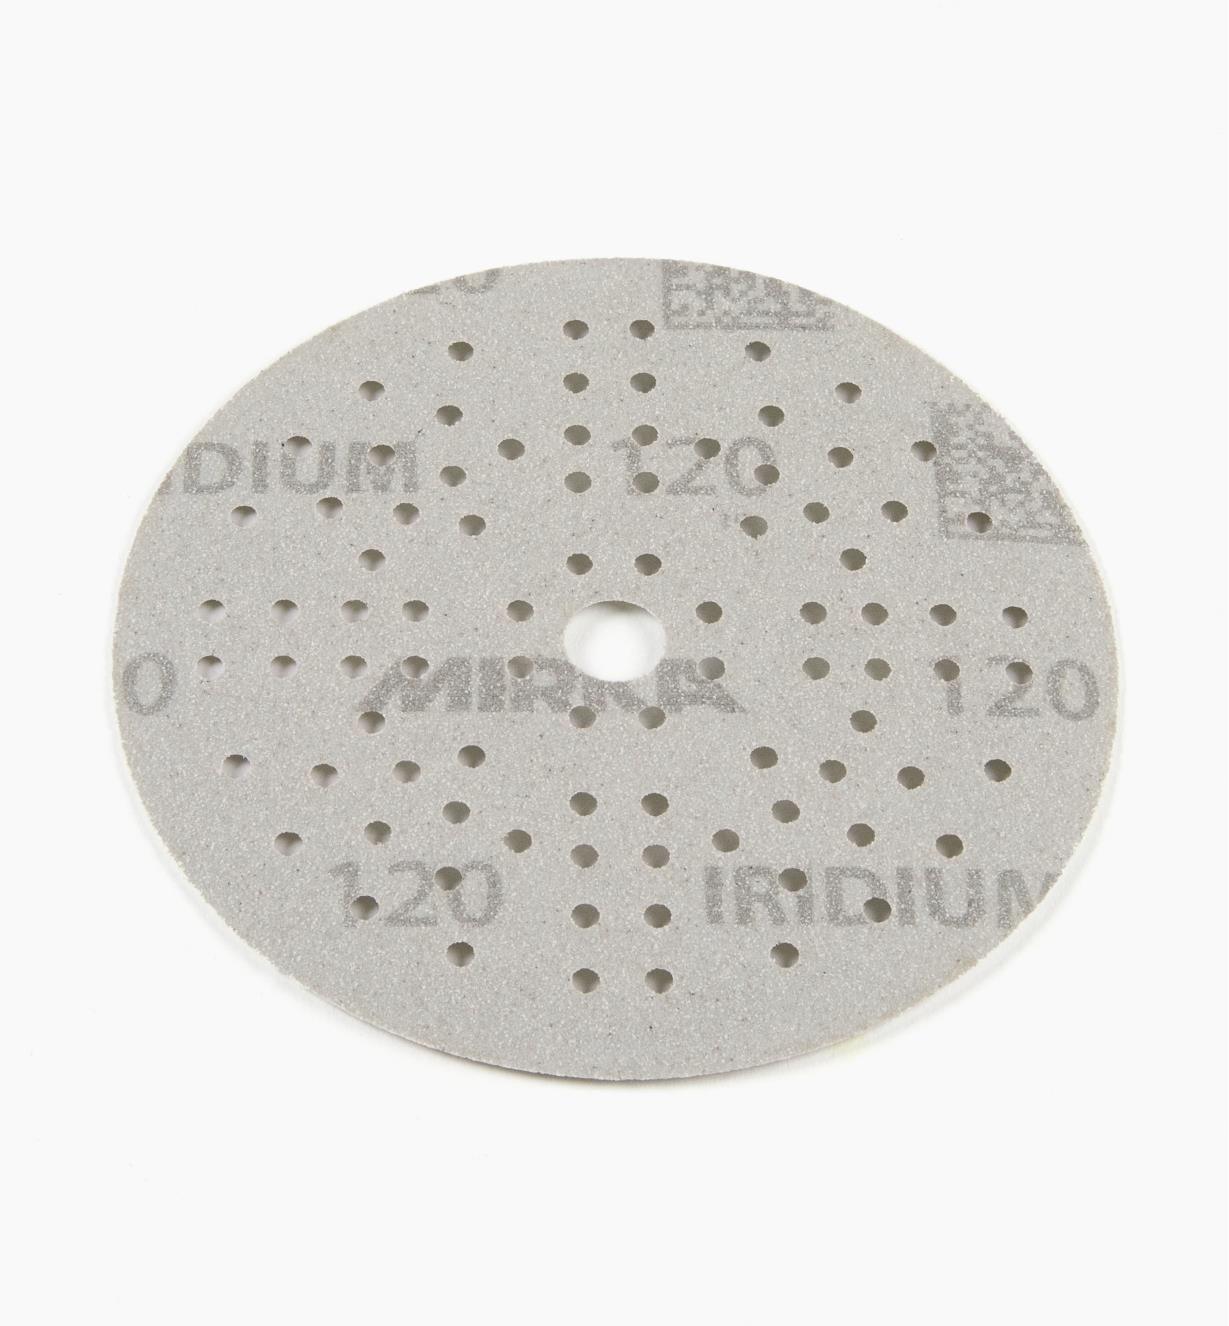 08K0924 - Disque abrasif autoagrippant Iridium, 5 po, 89 trous, grain 120, l'unité